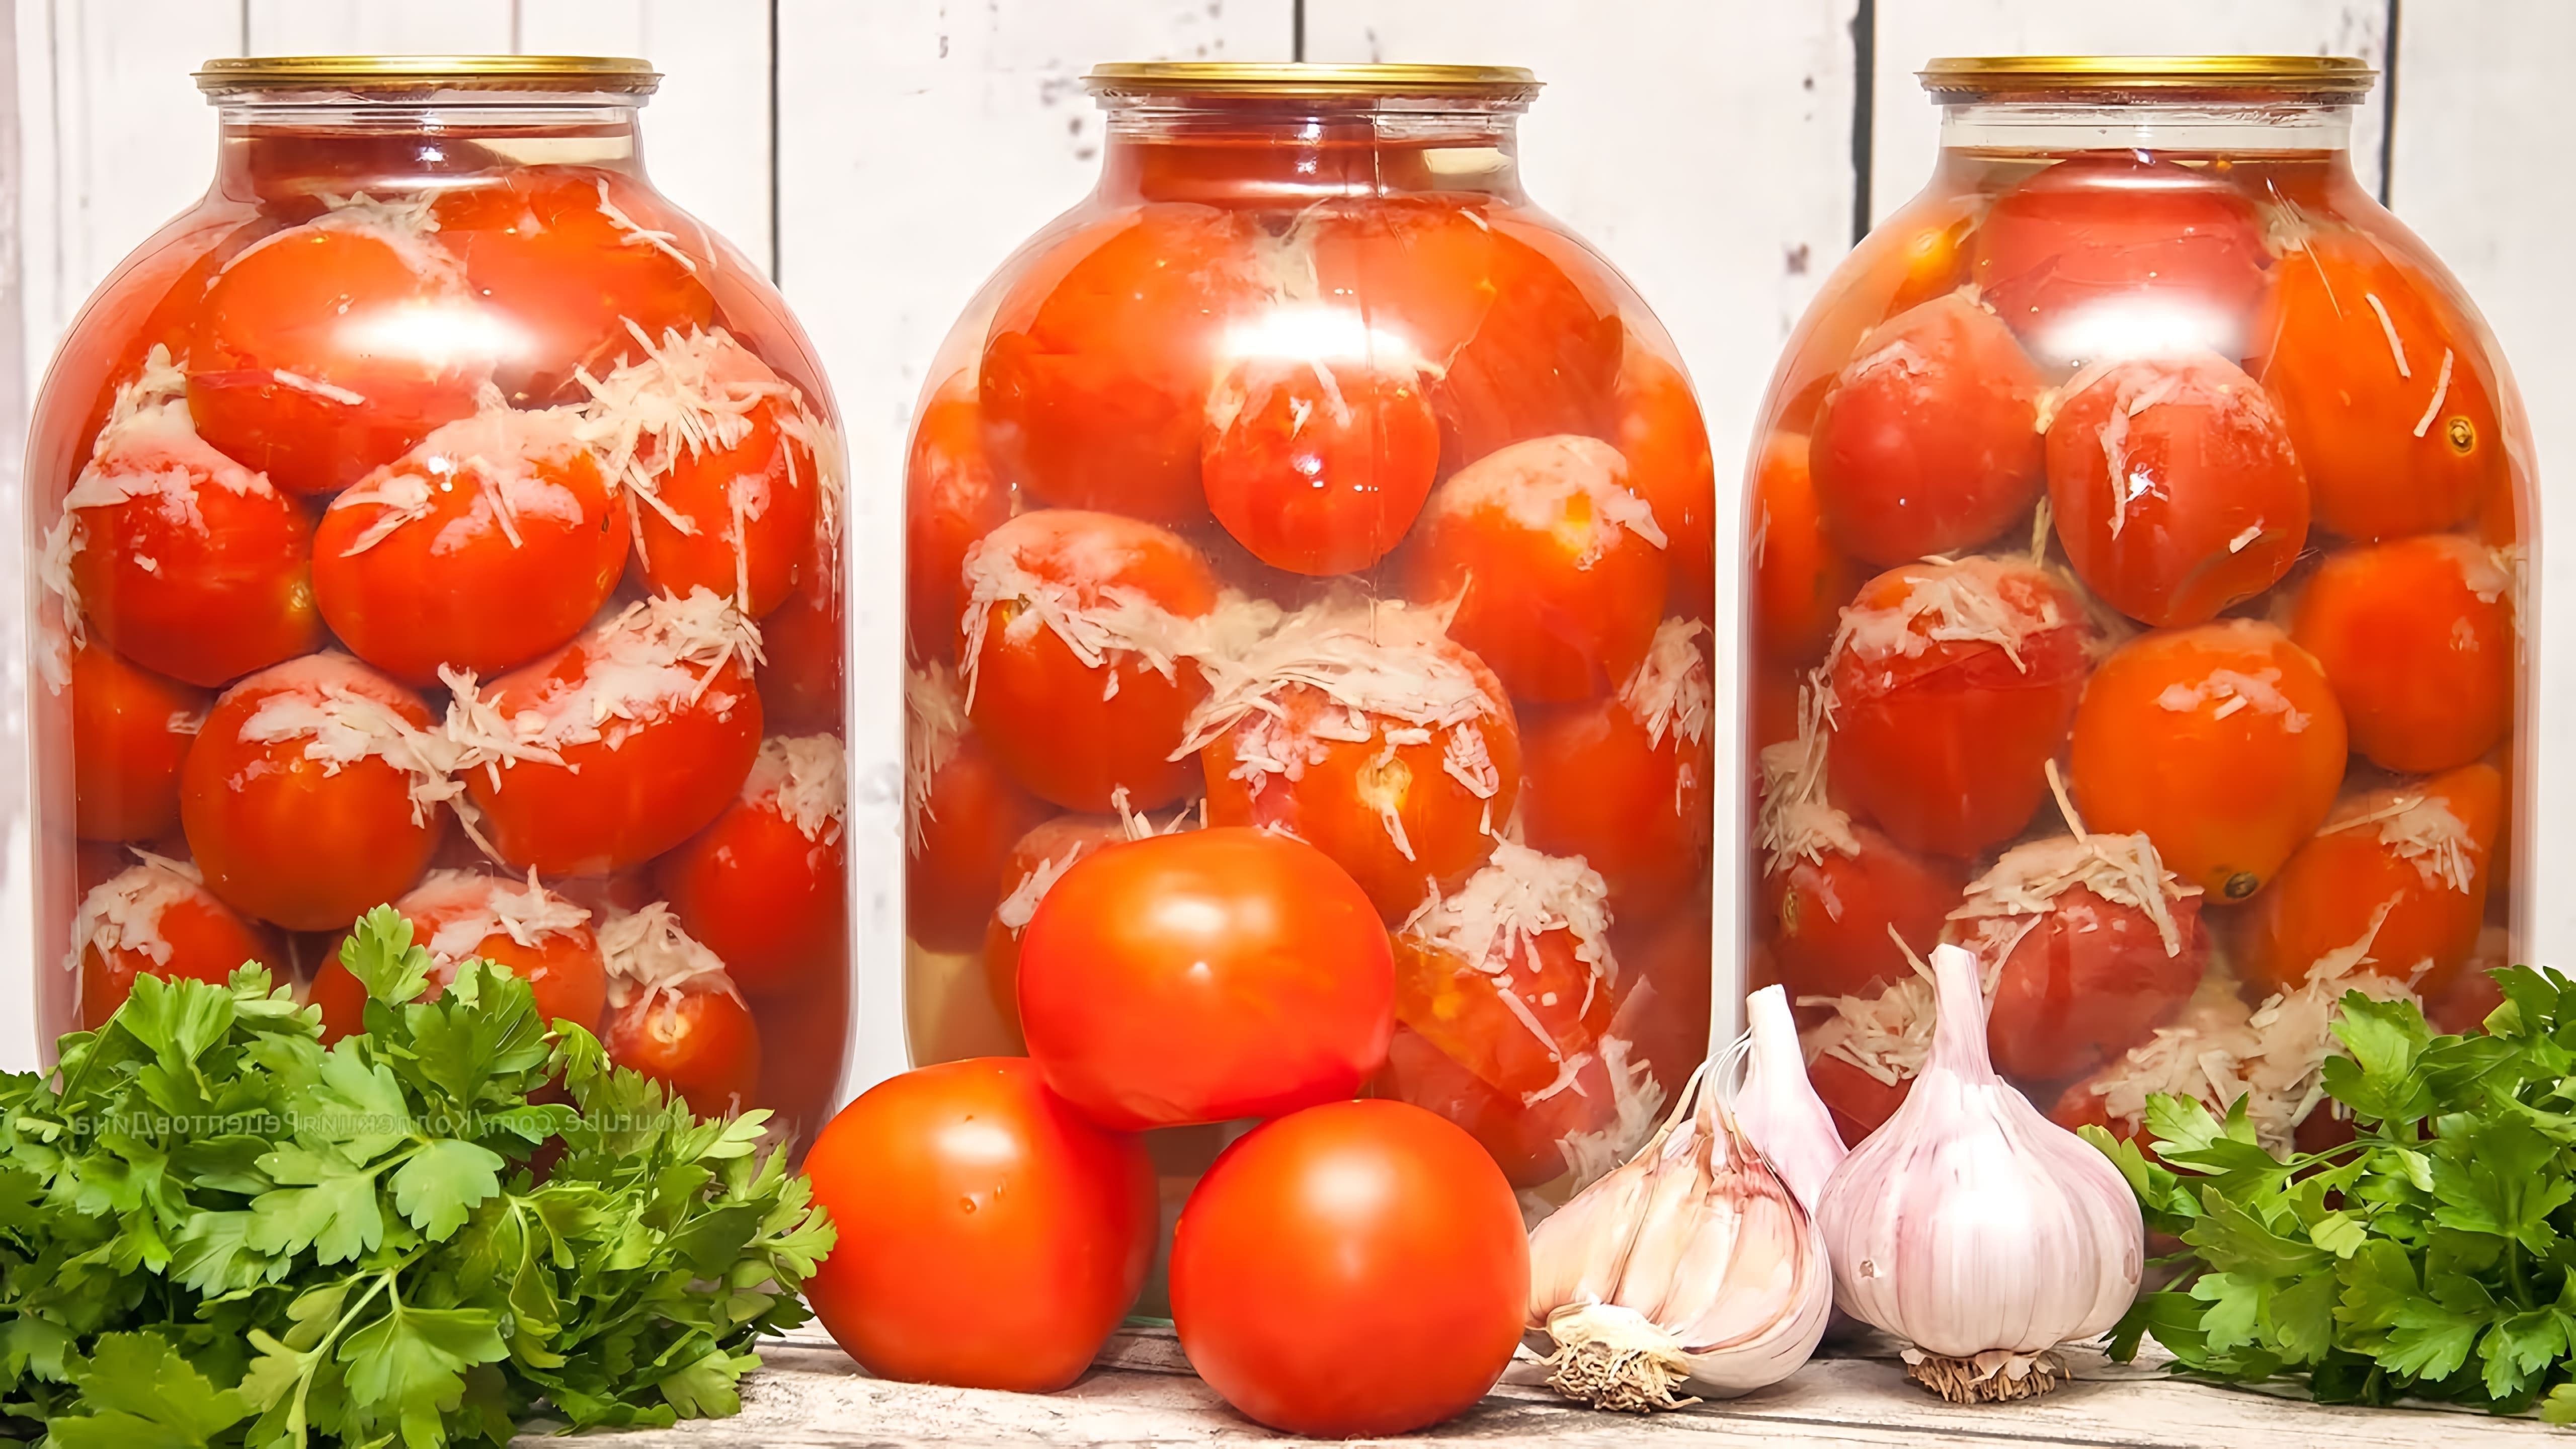 Видео рецепт для маринованных помидоров под названием "помидоры в снегу", которые вкусные, несмотря на использование небольшого количества ингредиентов и отсутствие уксуса